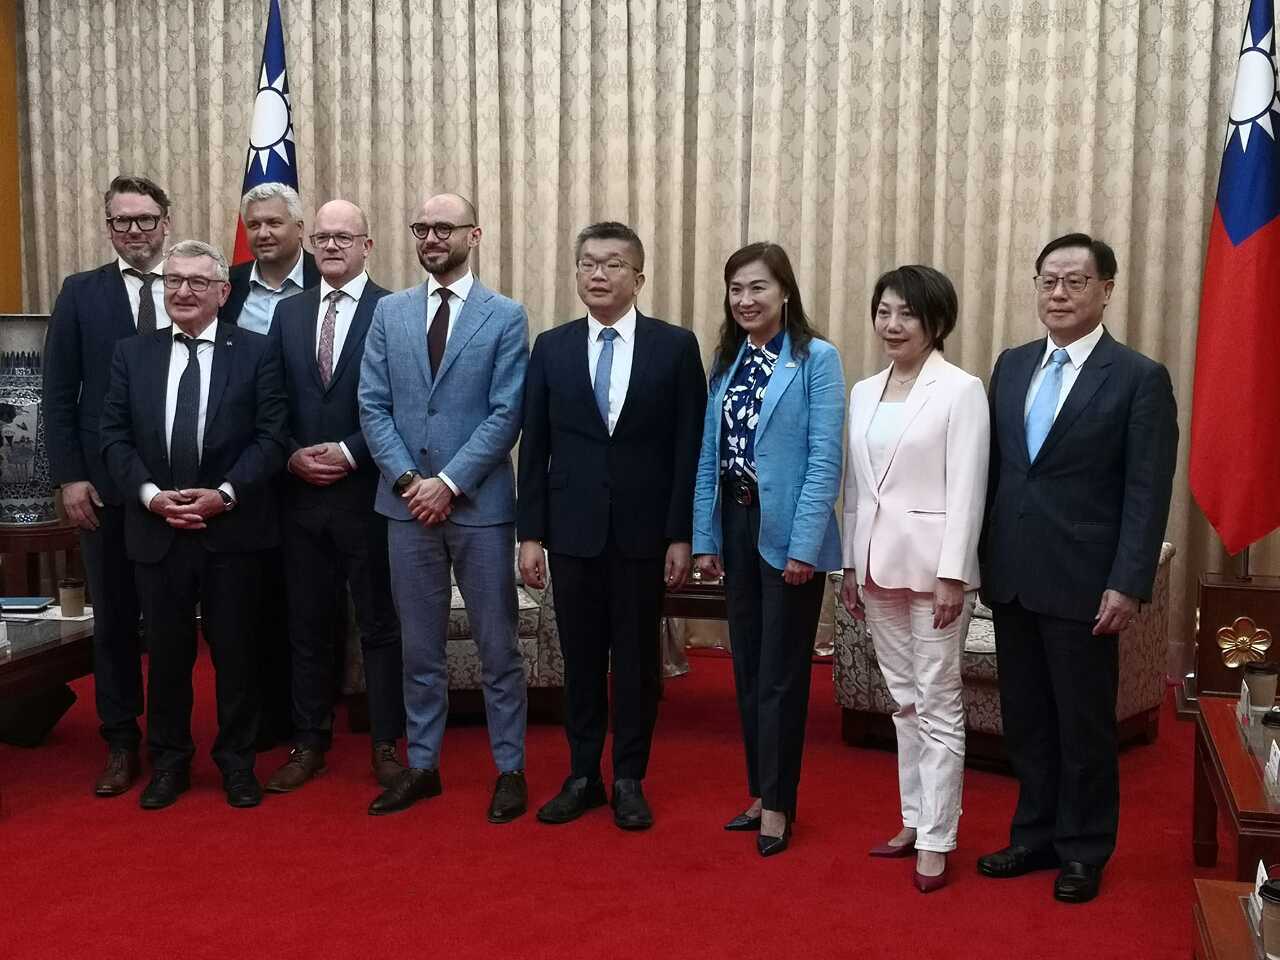 Ngày 17/5 Phó Viện trưởng Viện Lập pháp Thái Kỳ Xương đã đón tiếp phái đoàn nghị sĩ thuộc các đảng phái khác nhau của Bỉ sang thăm Đài Loan (Ảnh: Rti)